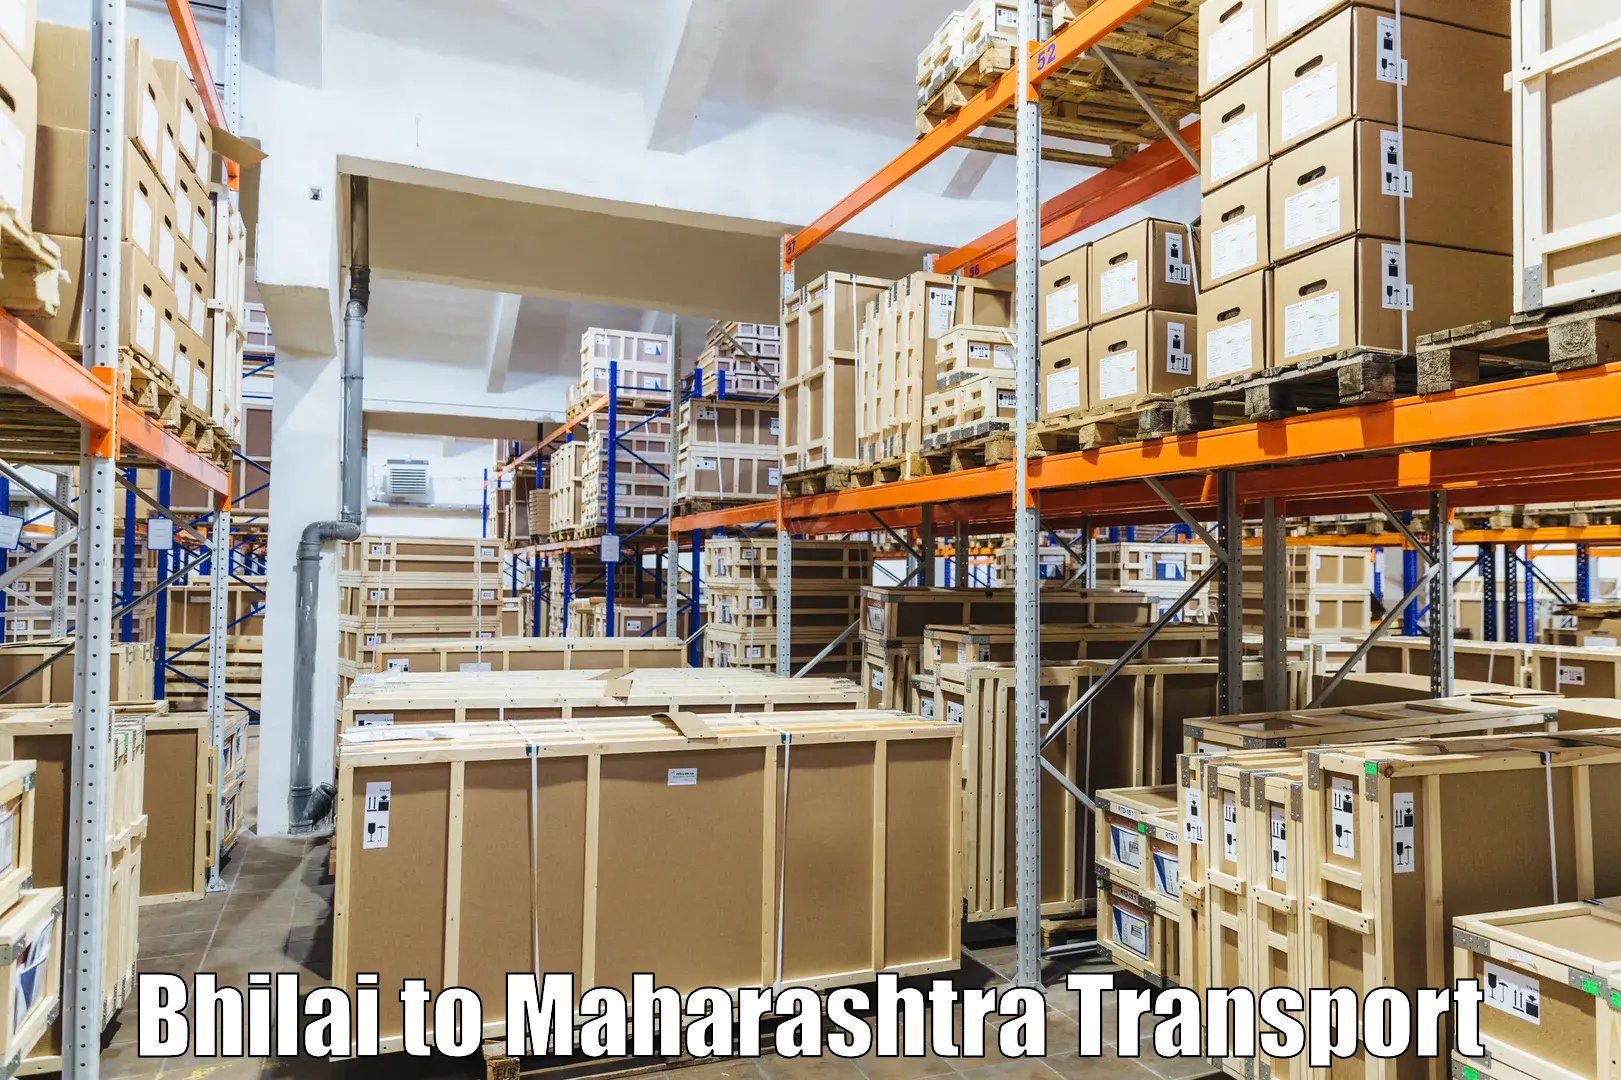 Furniture transport service Bhilai to Mahabaleshwar